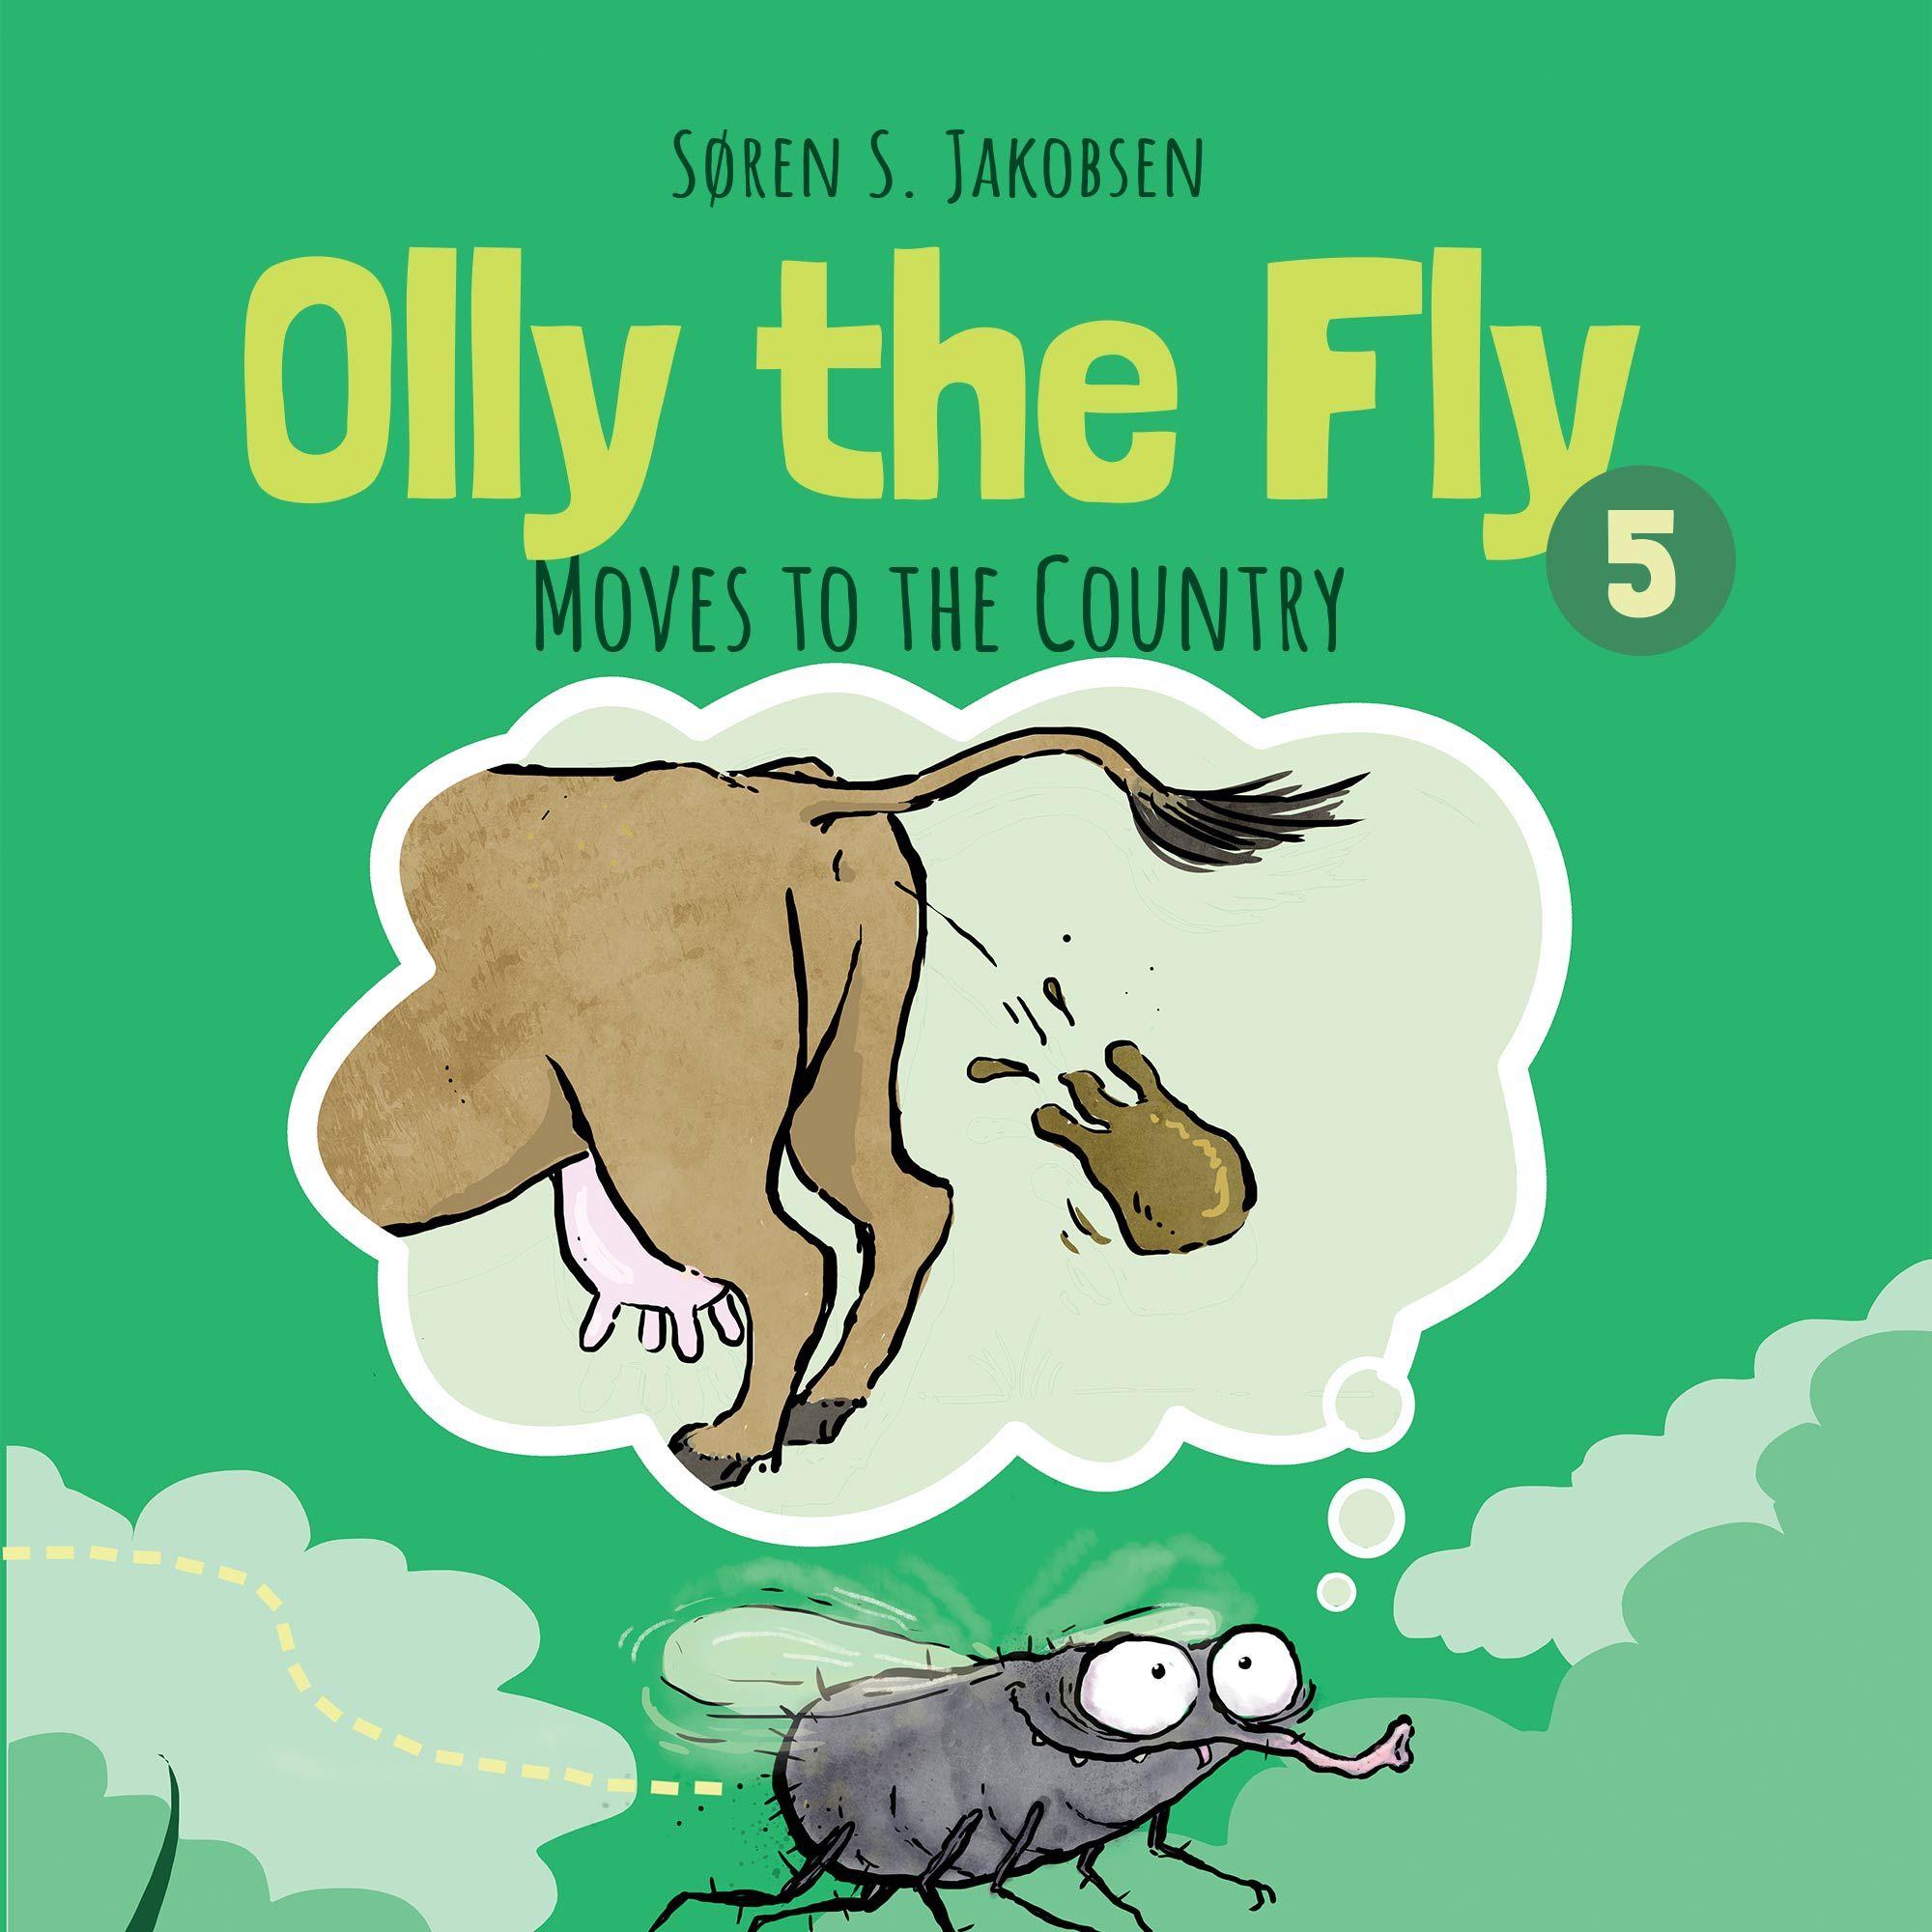 Olly the Fly #5: Olly the Fly Moves to the Country, ljudbok av Søren S. Jakobsen